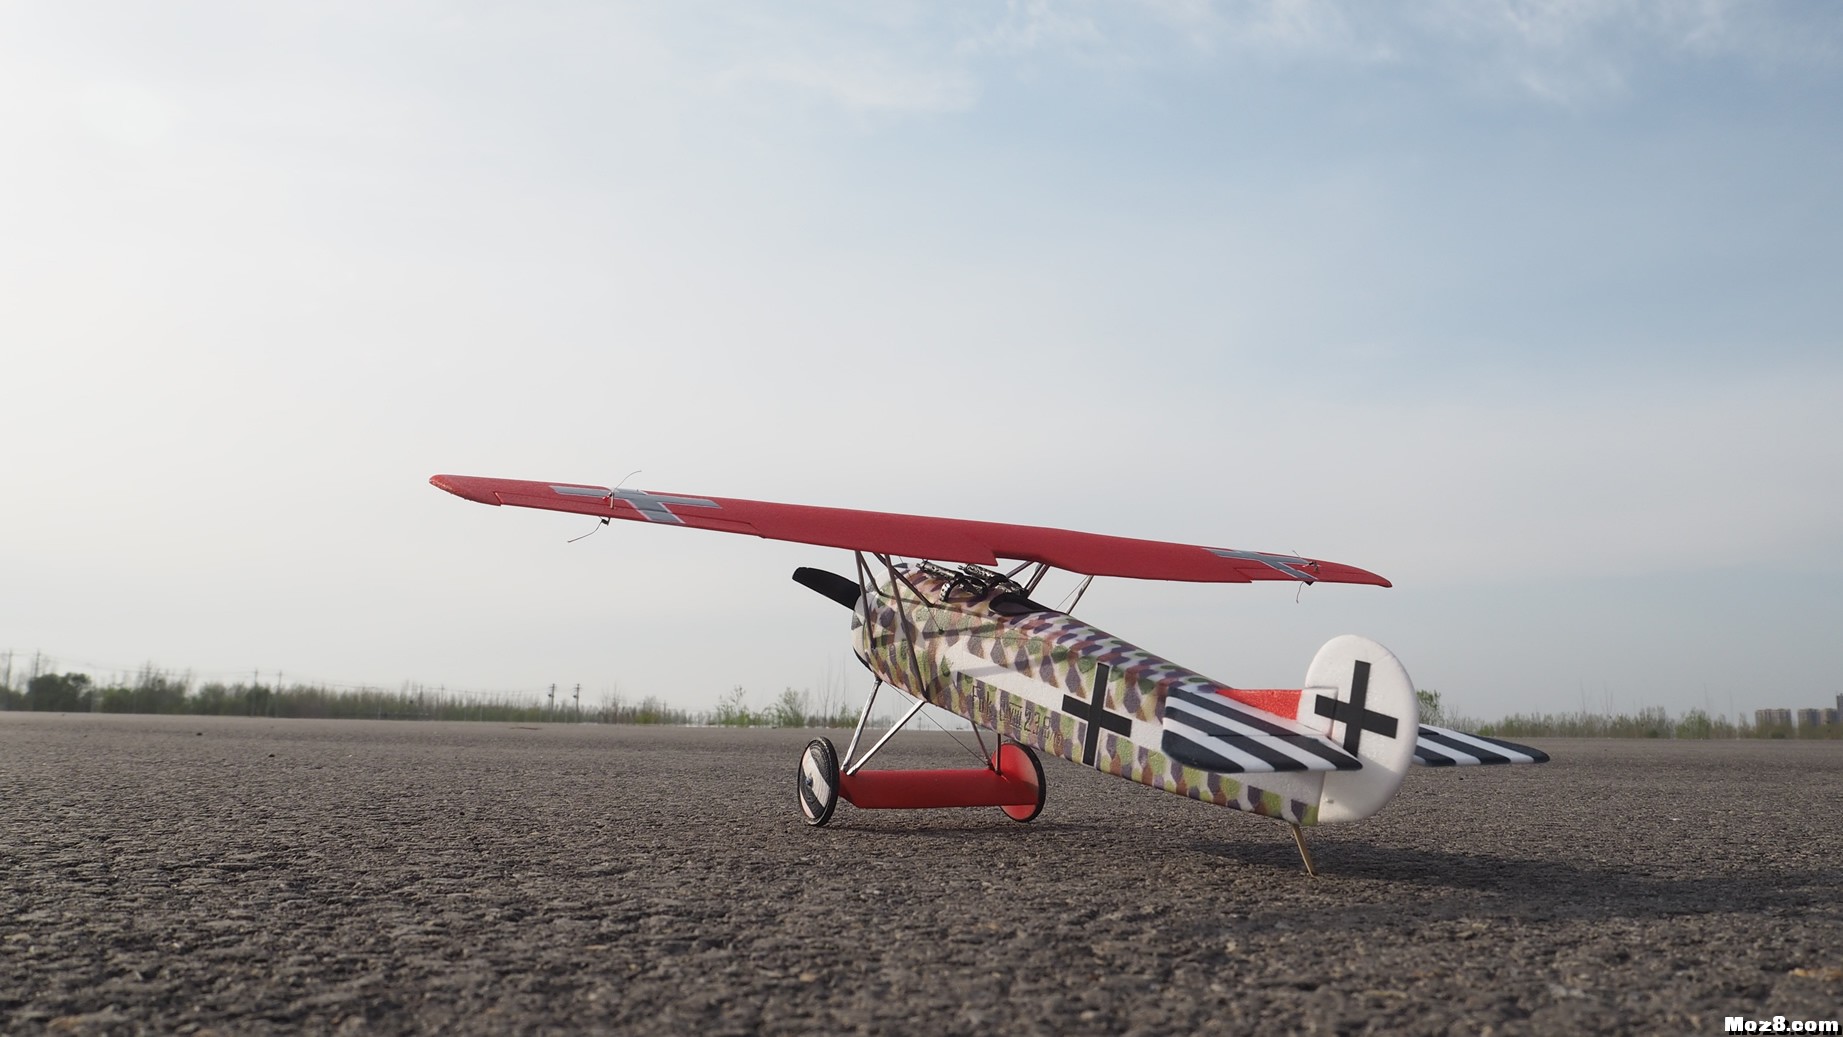 【爱因制造】迷你Fokker D-VIII战机 舵机,接收机,空心杯,bilibili,视频 作者:xbnlkdbxl 7462 